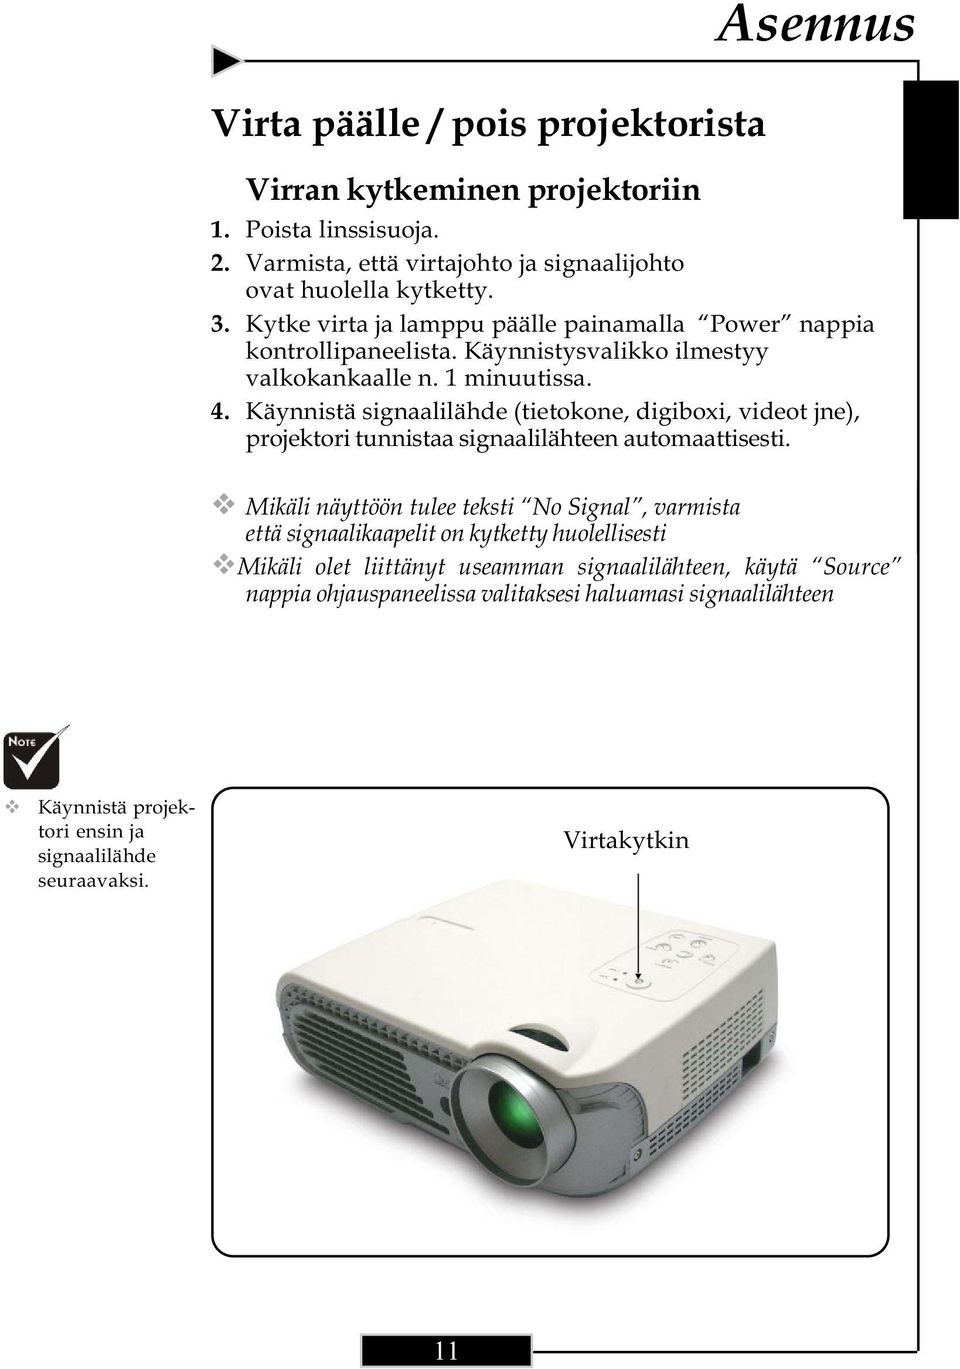 Käynnistä signaalilähde (tietokone, digiboxi, videot jne), projektori tunnistaa signaalilähteen automaattisesti.